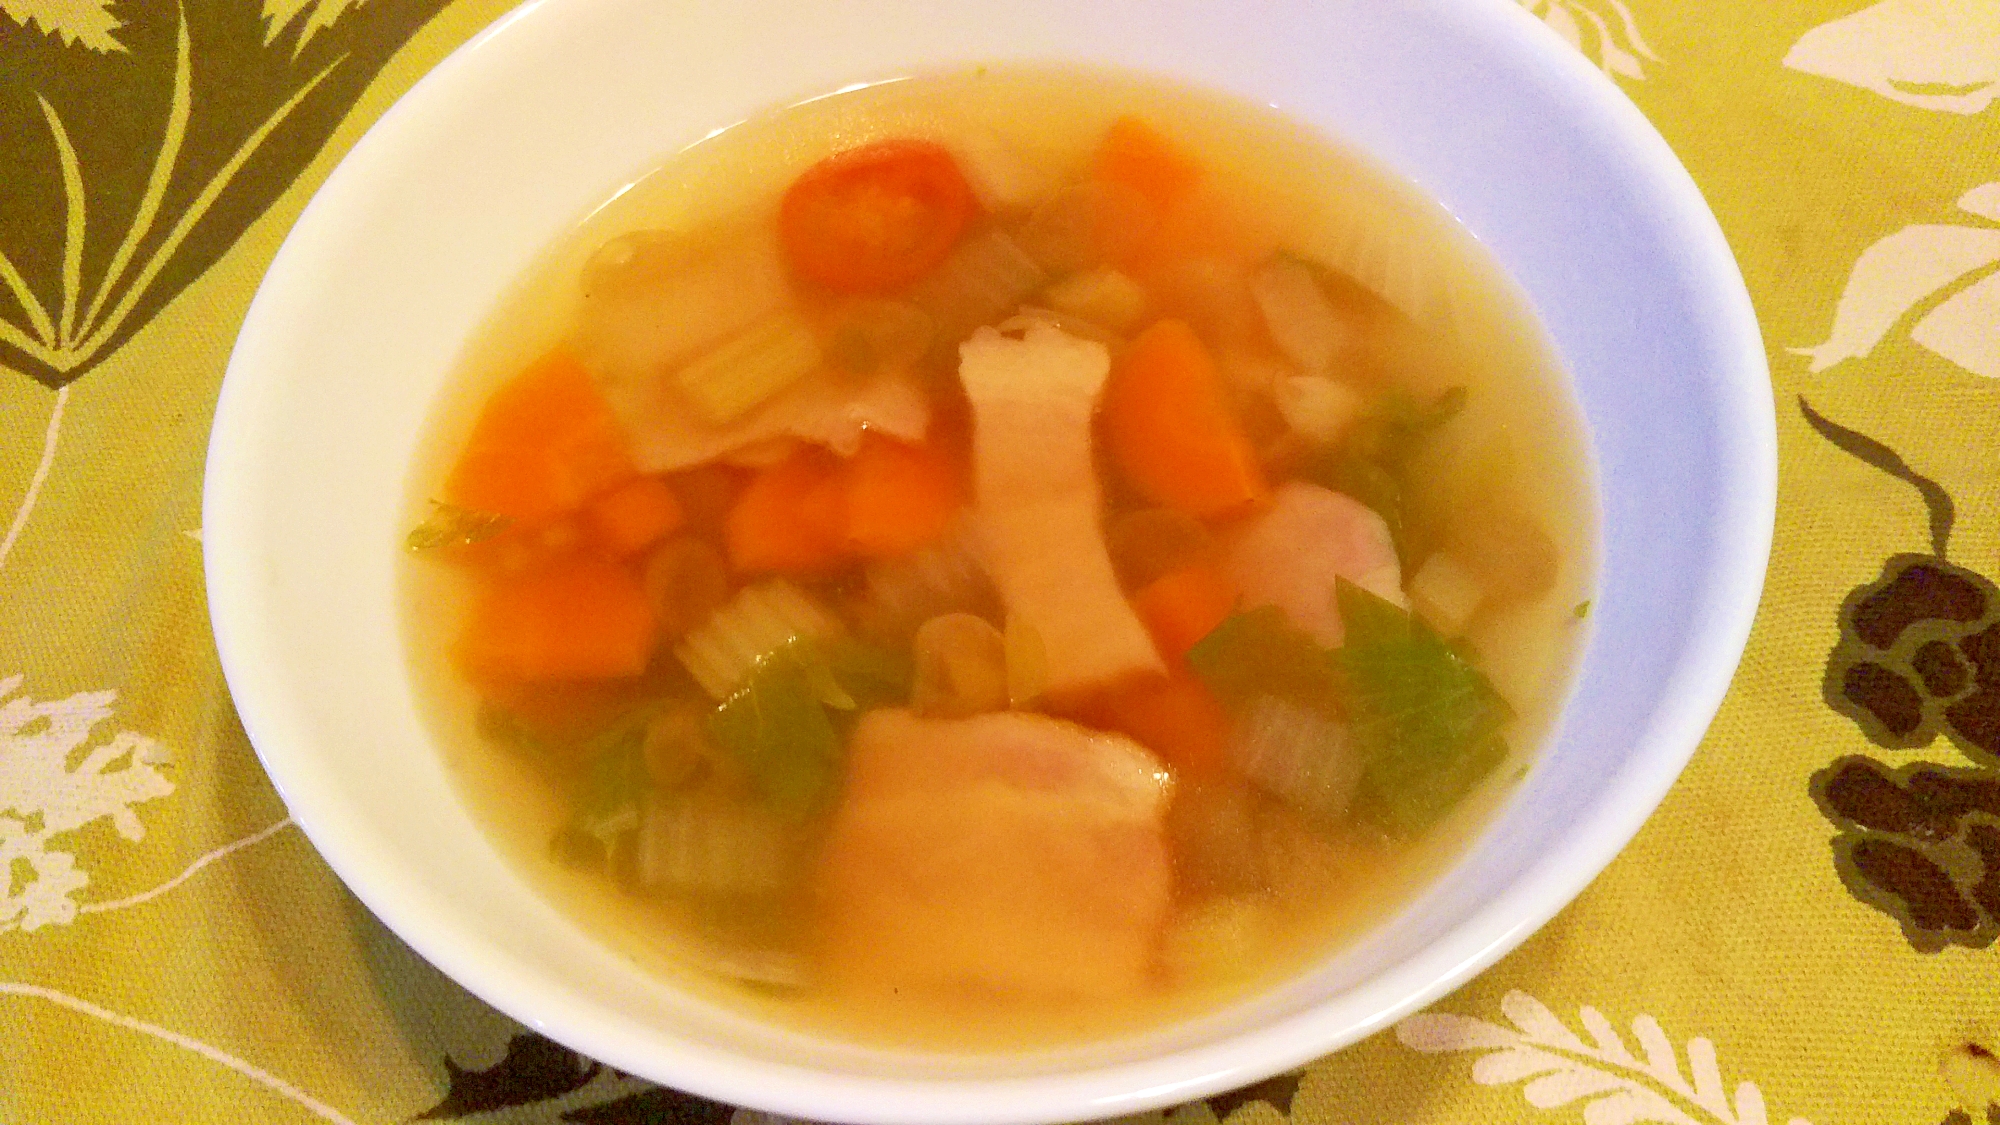 蒸し豆と野菜のスープ